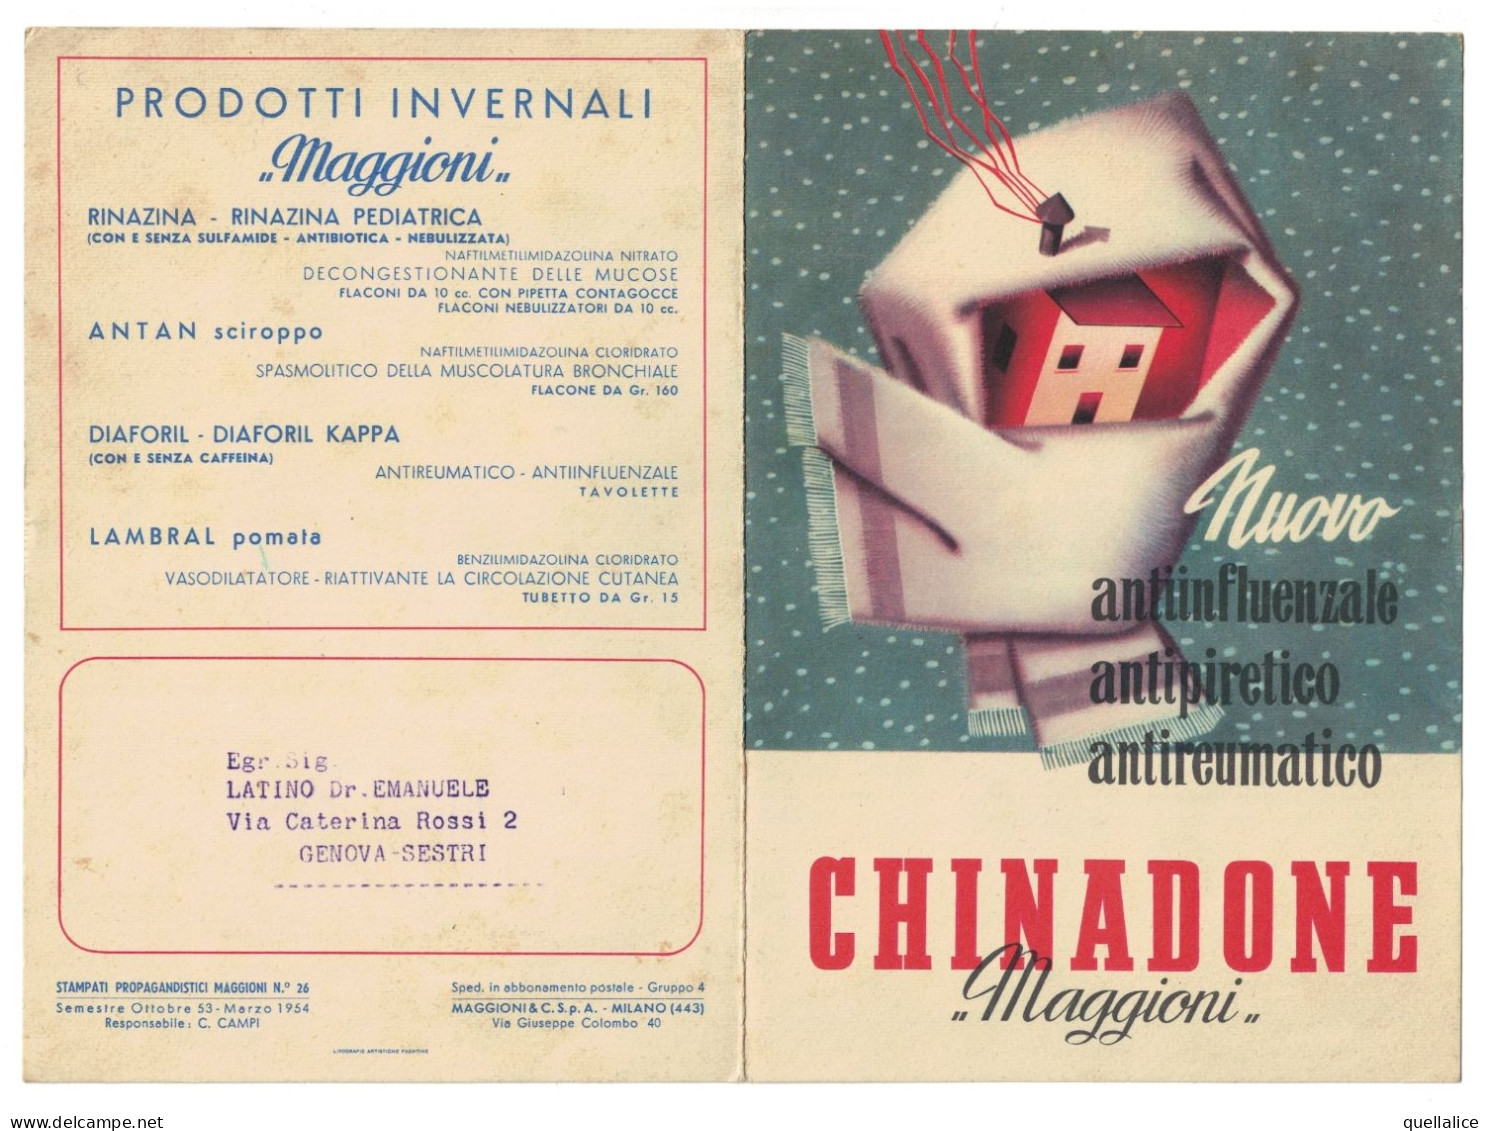 03916 "CHINADONE - MAGGIONI & C. S.PA. - NUOVO ANTIINFLUENZALE, ANTIPIRETICO, ANTIREUMATICO" PUBBL. 1954 - Publicités